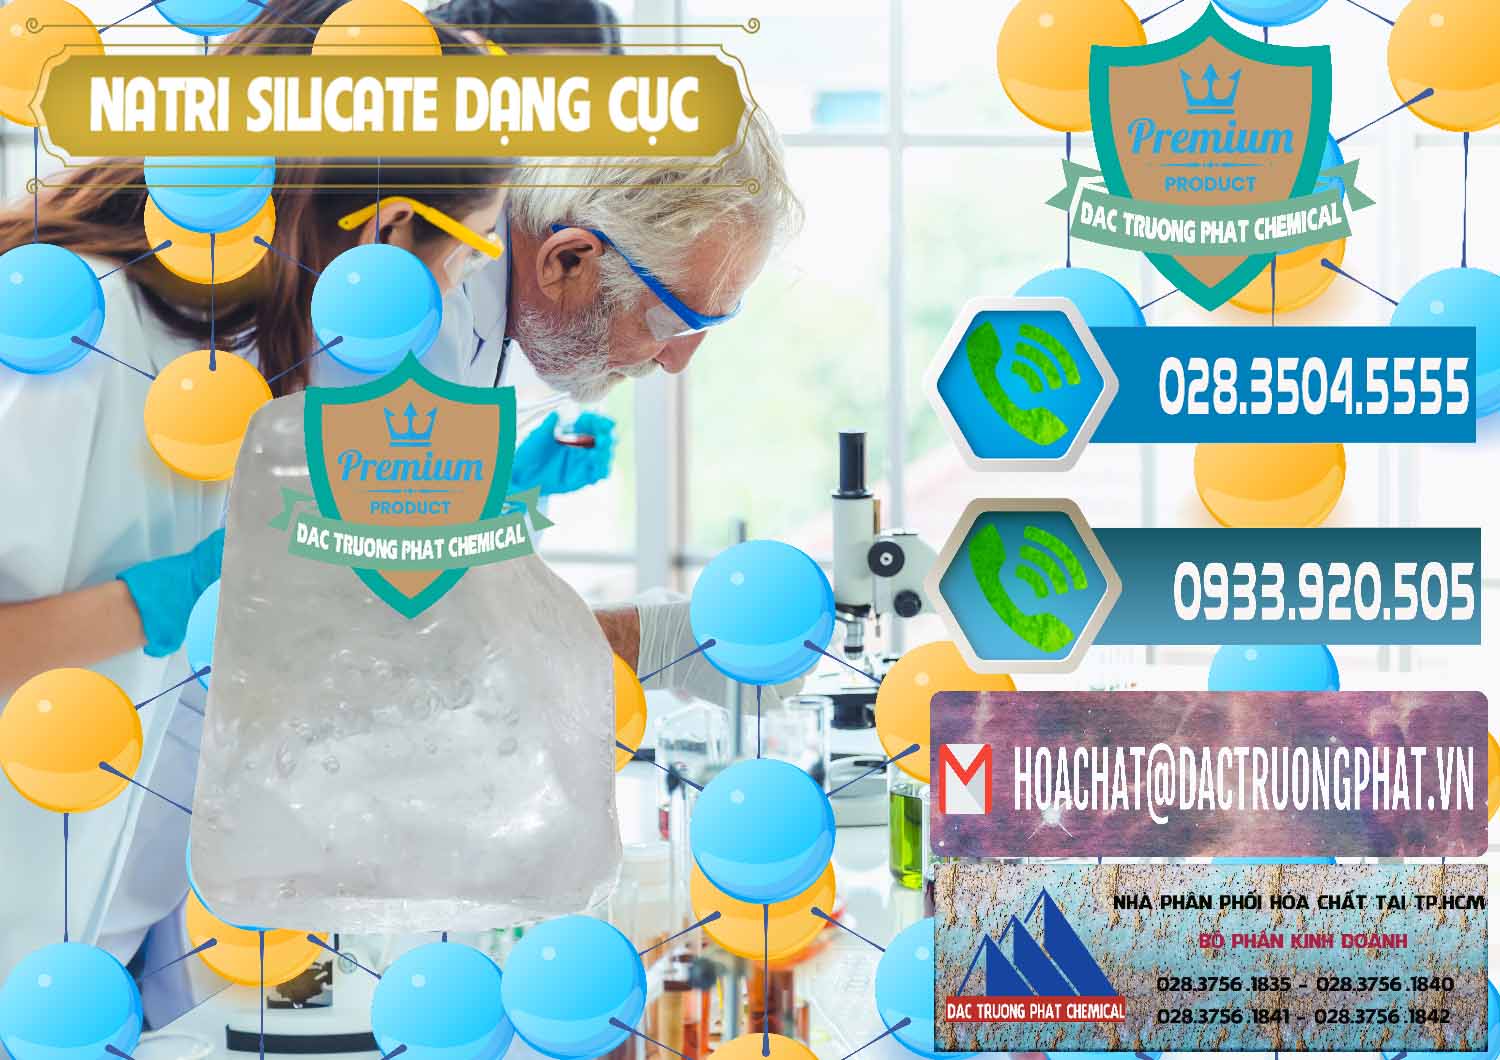 Cty chuyên cung cấp _ bán Natri Silicate - Na2SiO3 - Keo Silicate Dạng Cục Ấn Độ India - 0382 - Nơi chuyên bán - cung cấp hóa chất tại TP.HCM - congtyhoachat.net